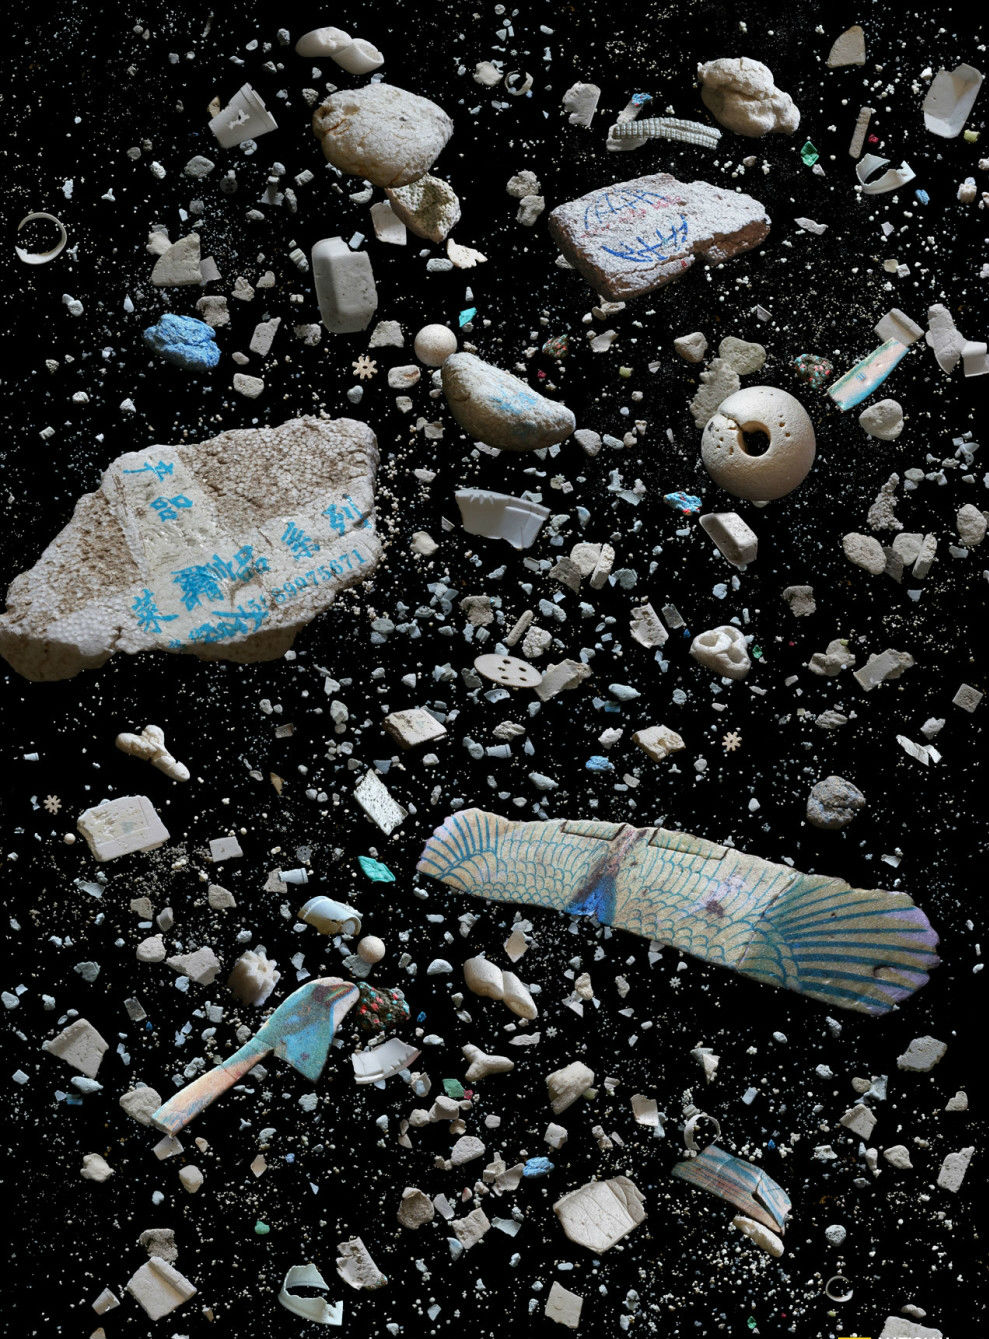 海洋垃圾摄影:远看美丽 细思忧心